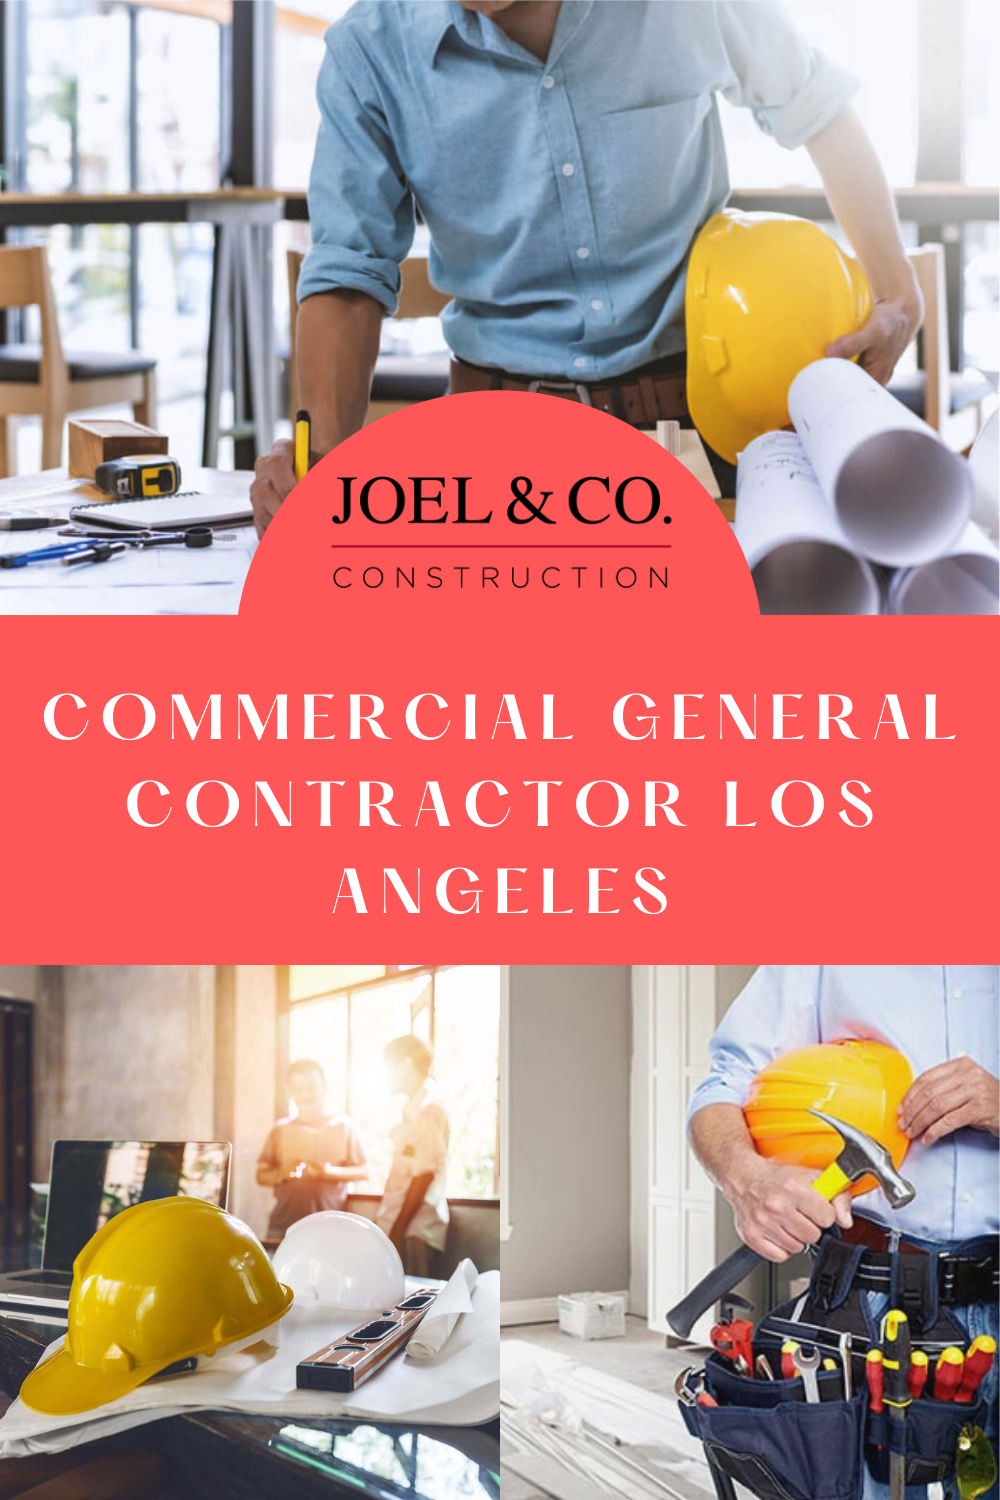 Commercial general contractor Los Angeles